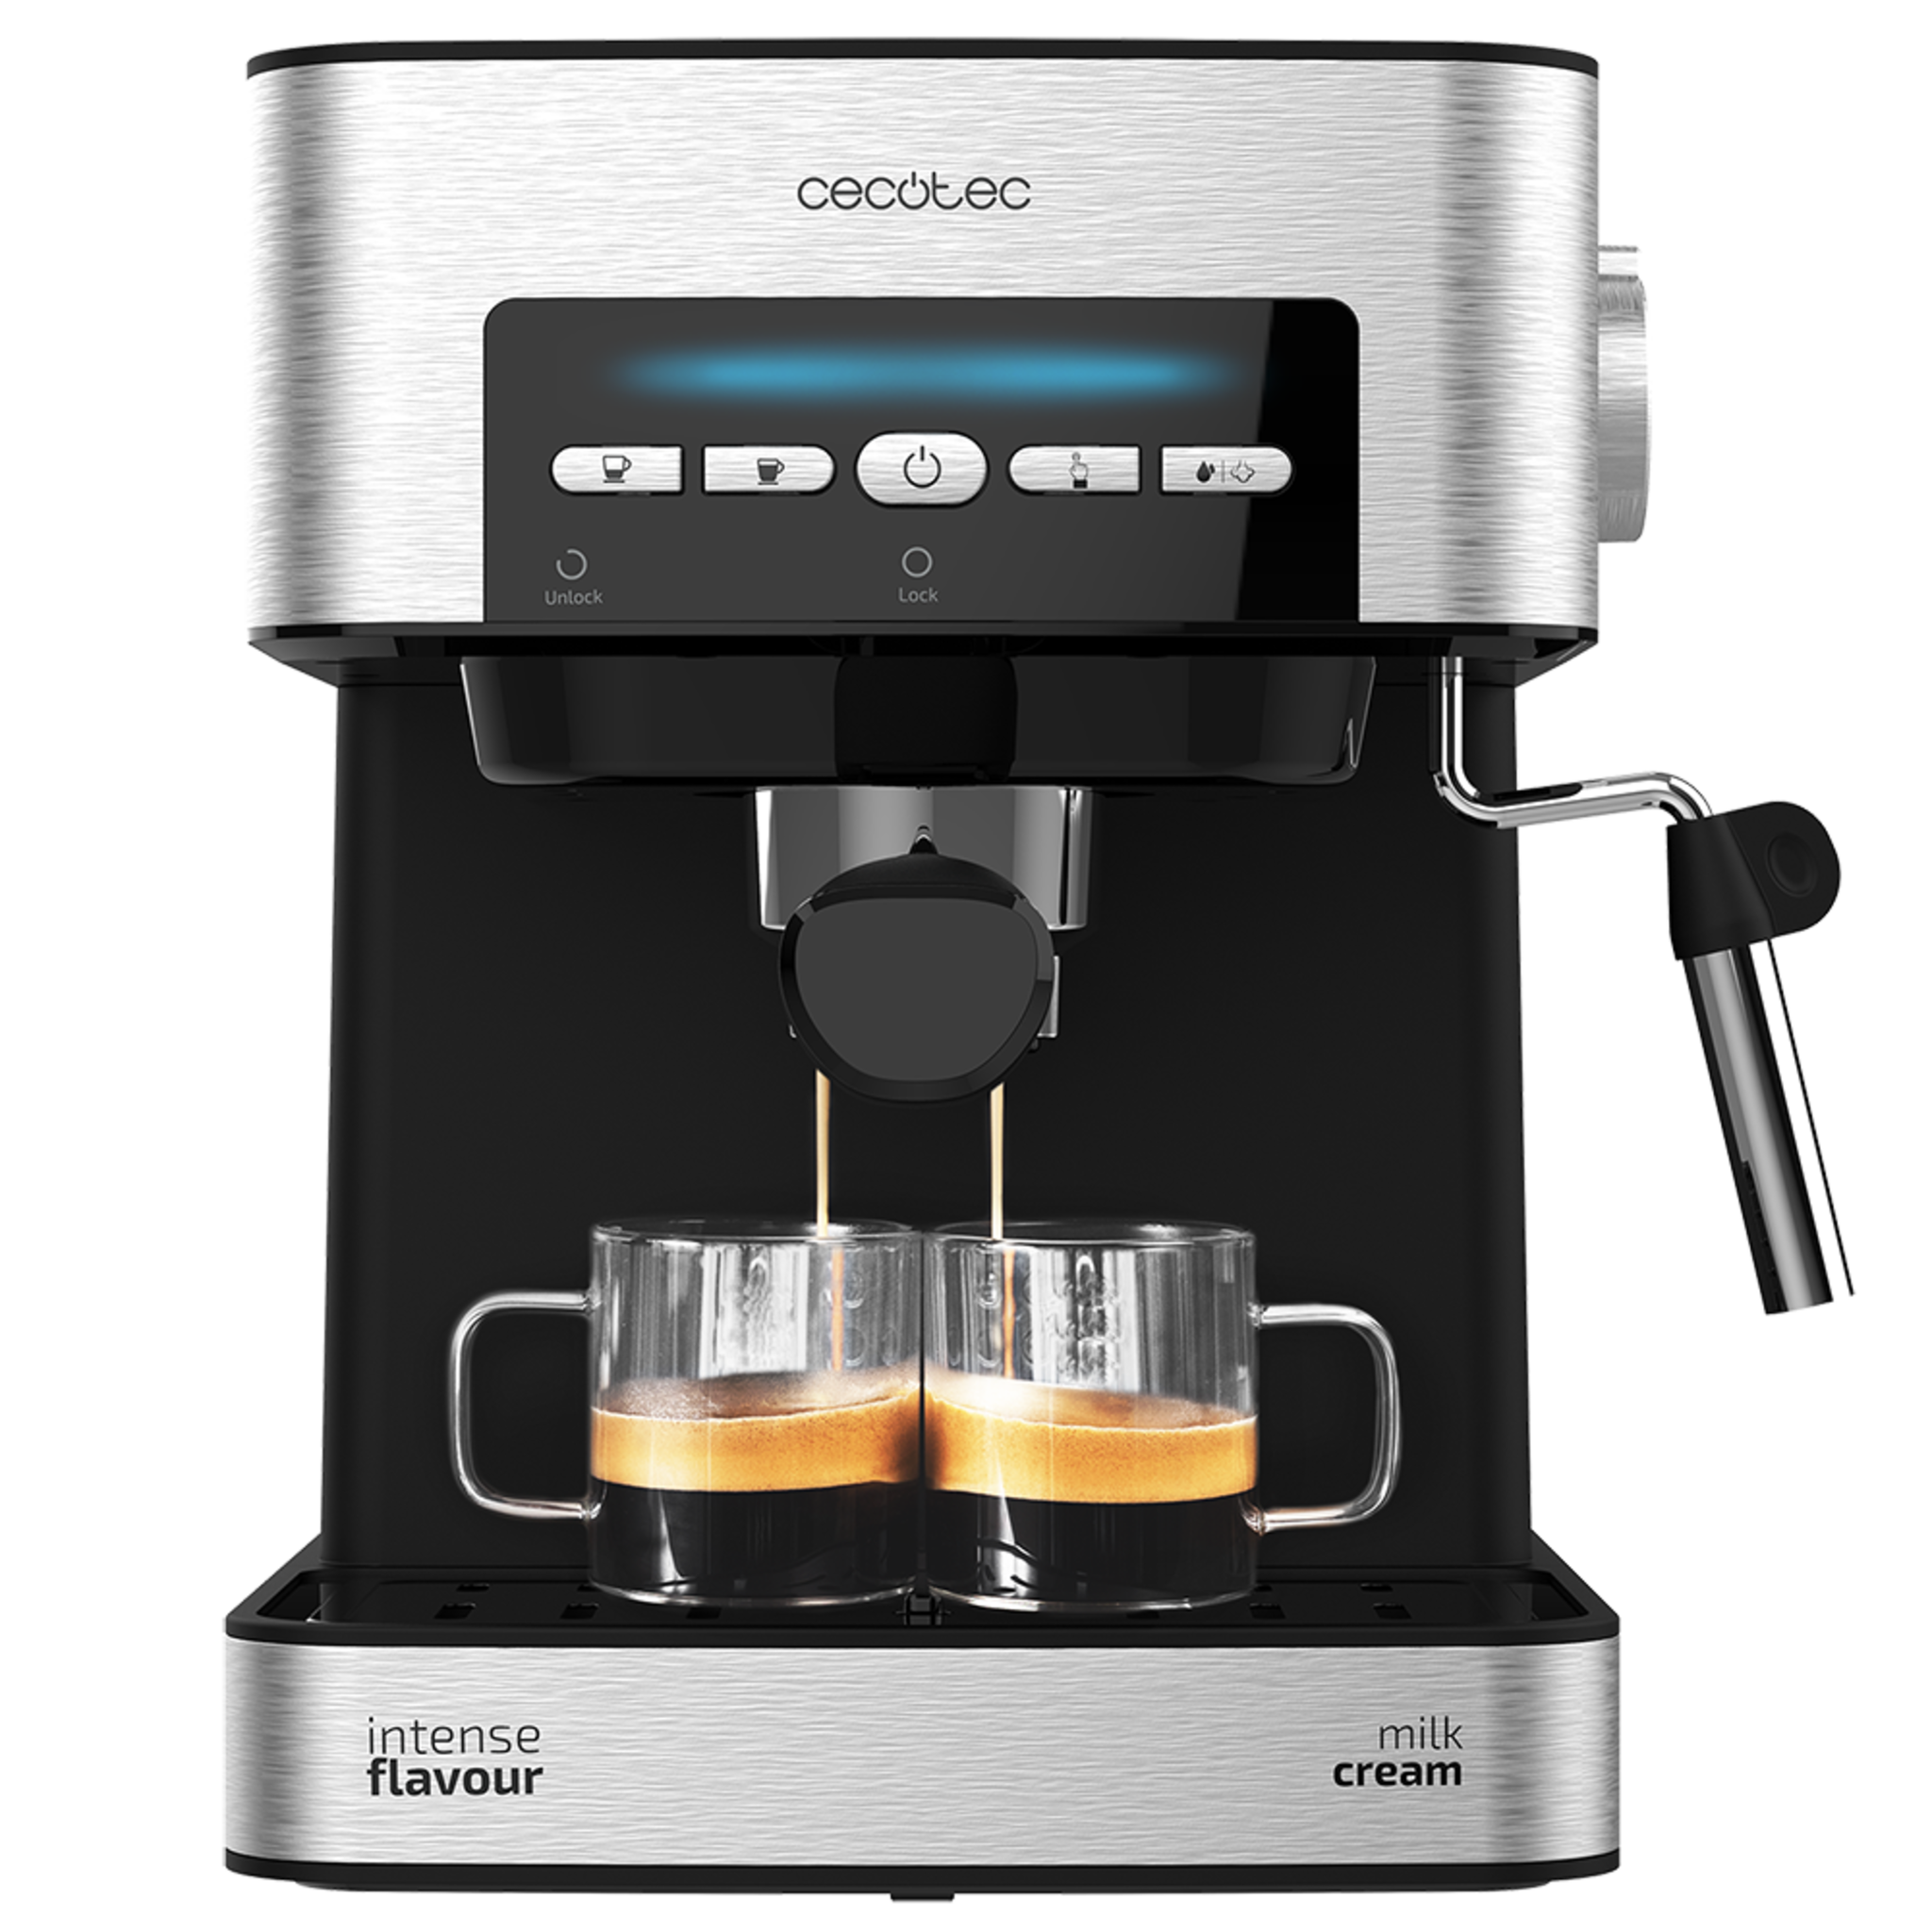 Machine à café Power Espresso 20 Matic avec 20 bars de pression, réservoir d'1,5 L, bras à double sortie, buse vapeur, plateau réchauffe-tasses, commandes numériques, 850 W et finition en acier inoxydable noir/argenté